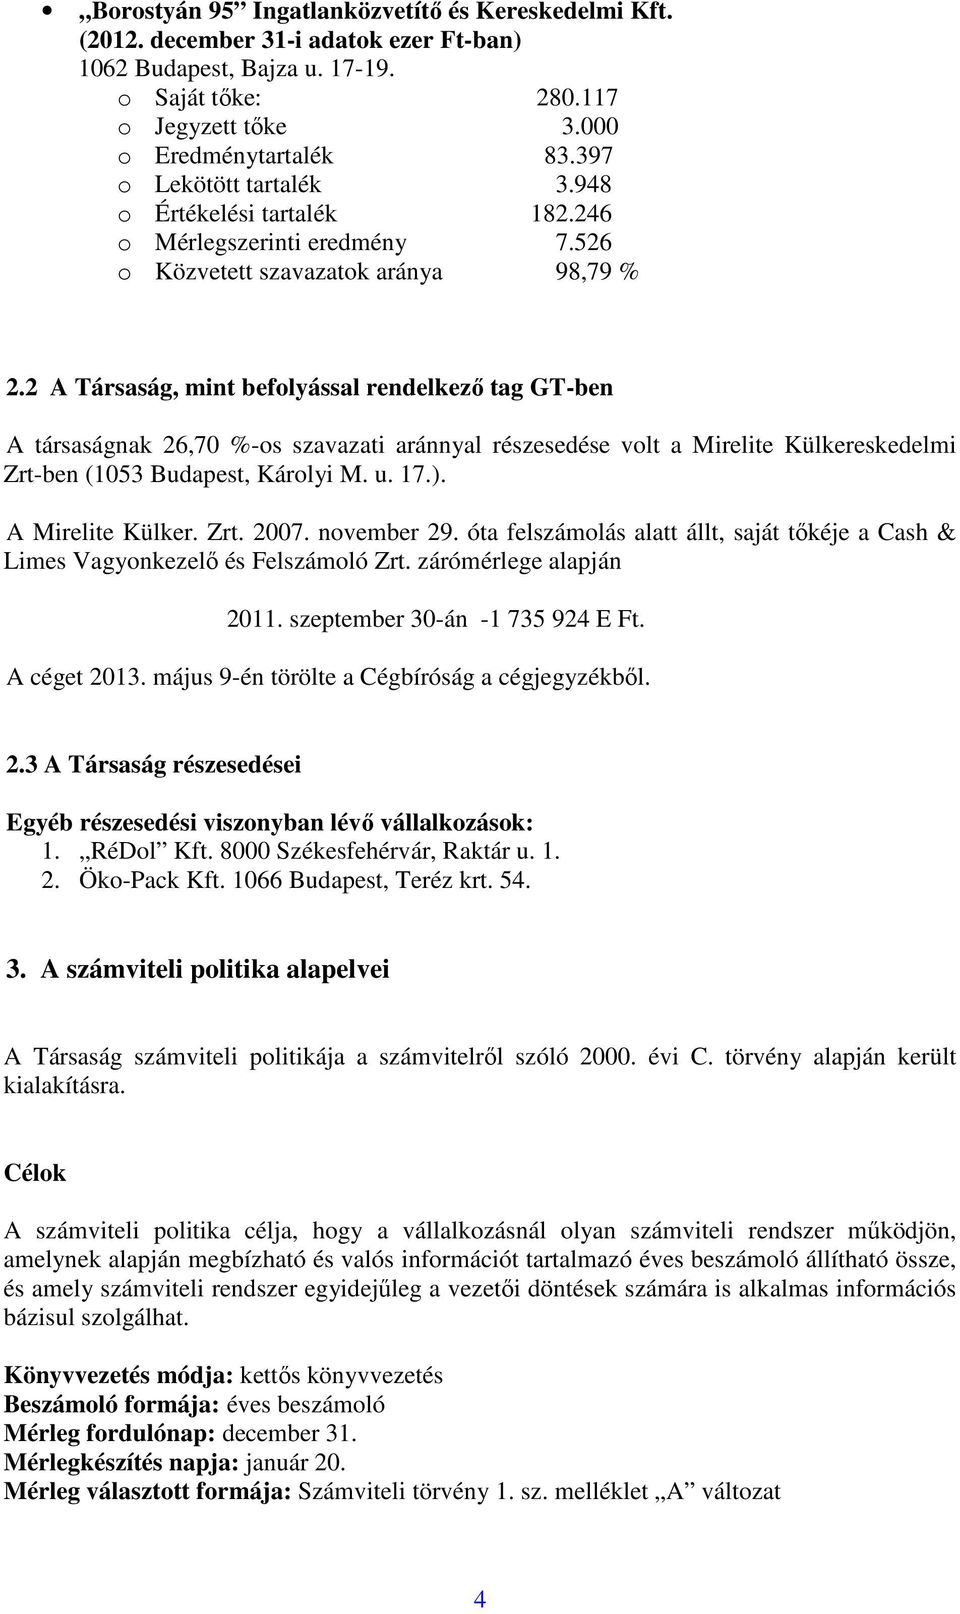 2 A Társaság, mint befolyással rendelkező tag GT-ben A társaságnak 26,70 %-os szavazati aránnyal részesedése volt a Mirelite Külkereskedelmi Zrt-ben (1053 Budapest, Károlyi M. u. 17.).